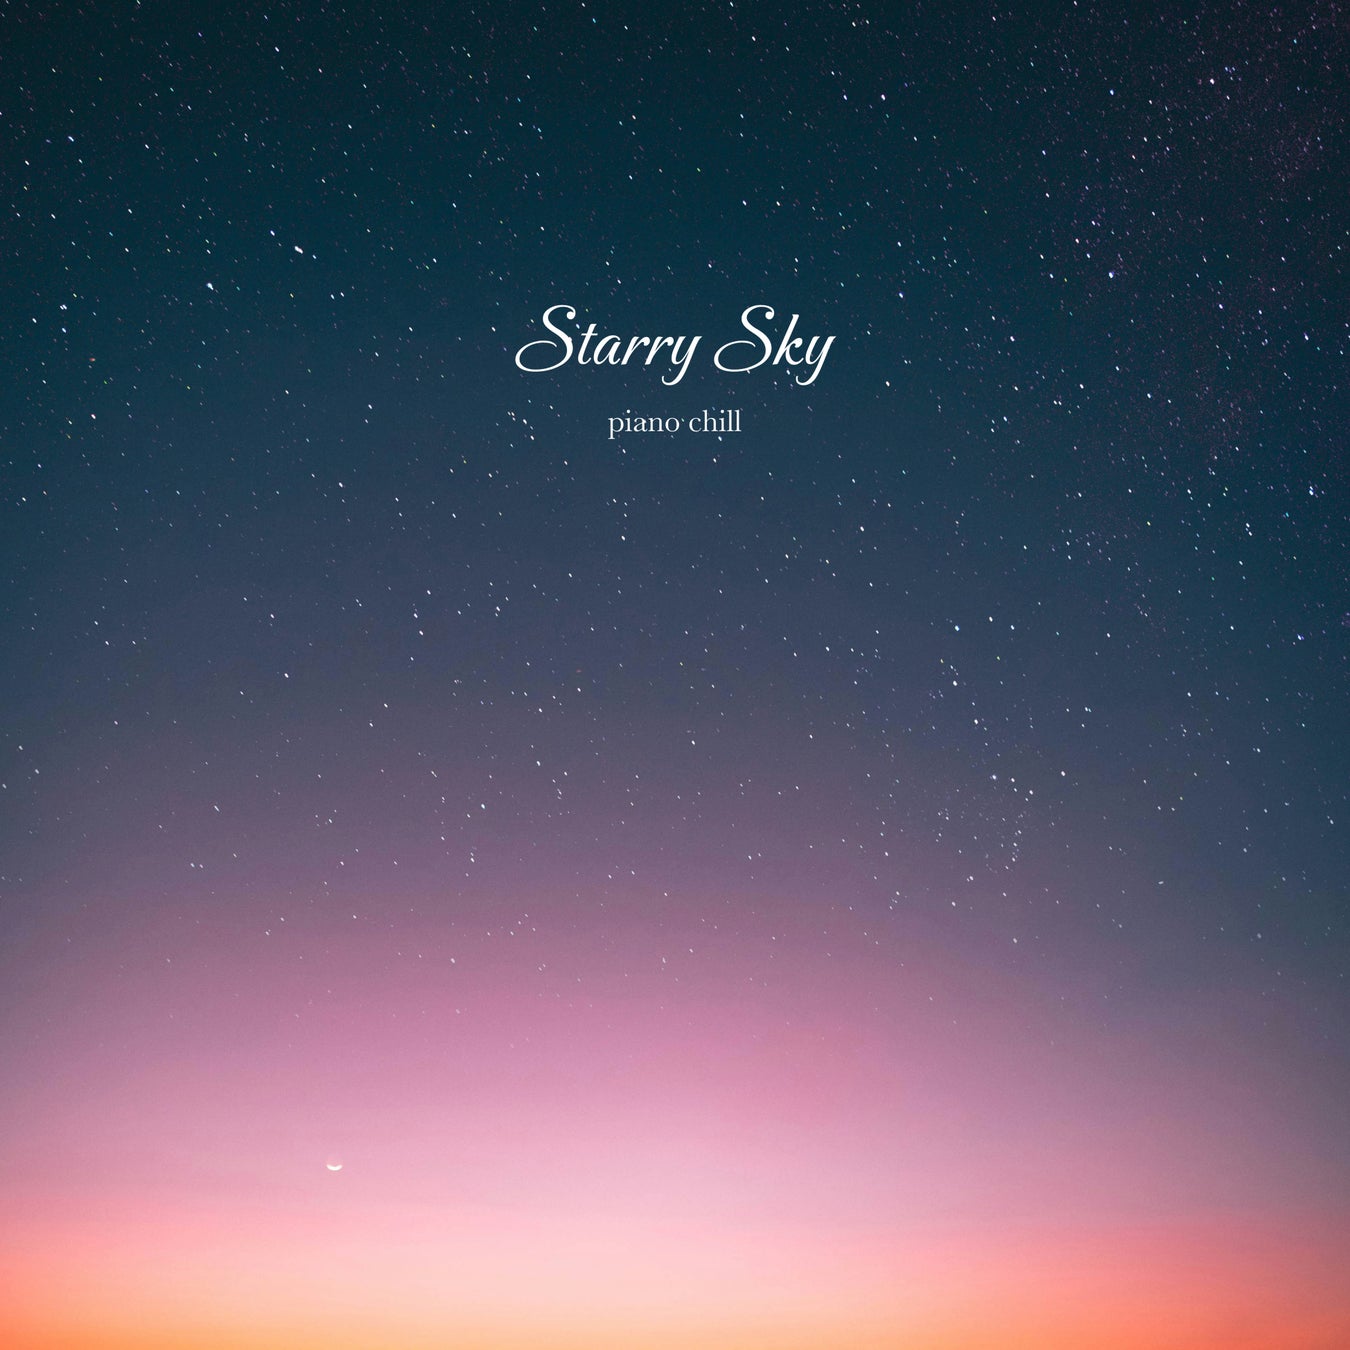 心地よい波の音と美しいピアノの音色でココロのヒーリング‼ 癒やしを奏でるアーティスト『クラッシームーン』による最新アルバム『Starry Sky -piano chill-』！